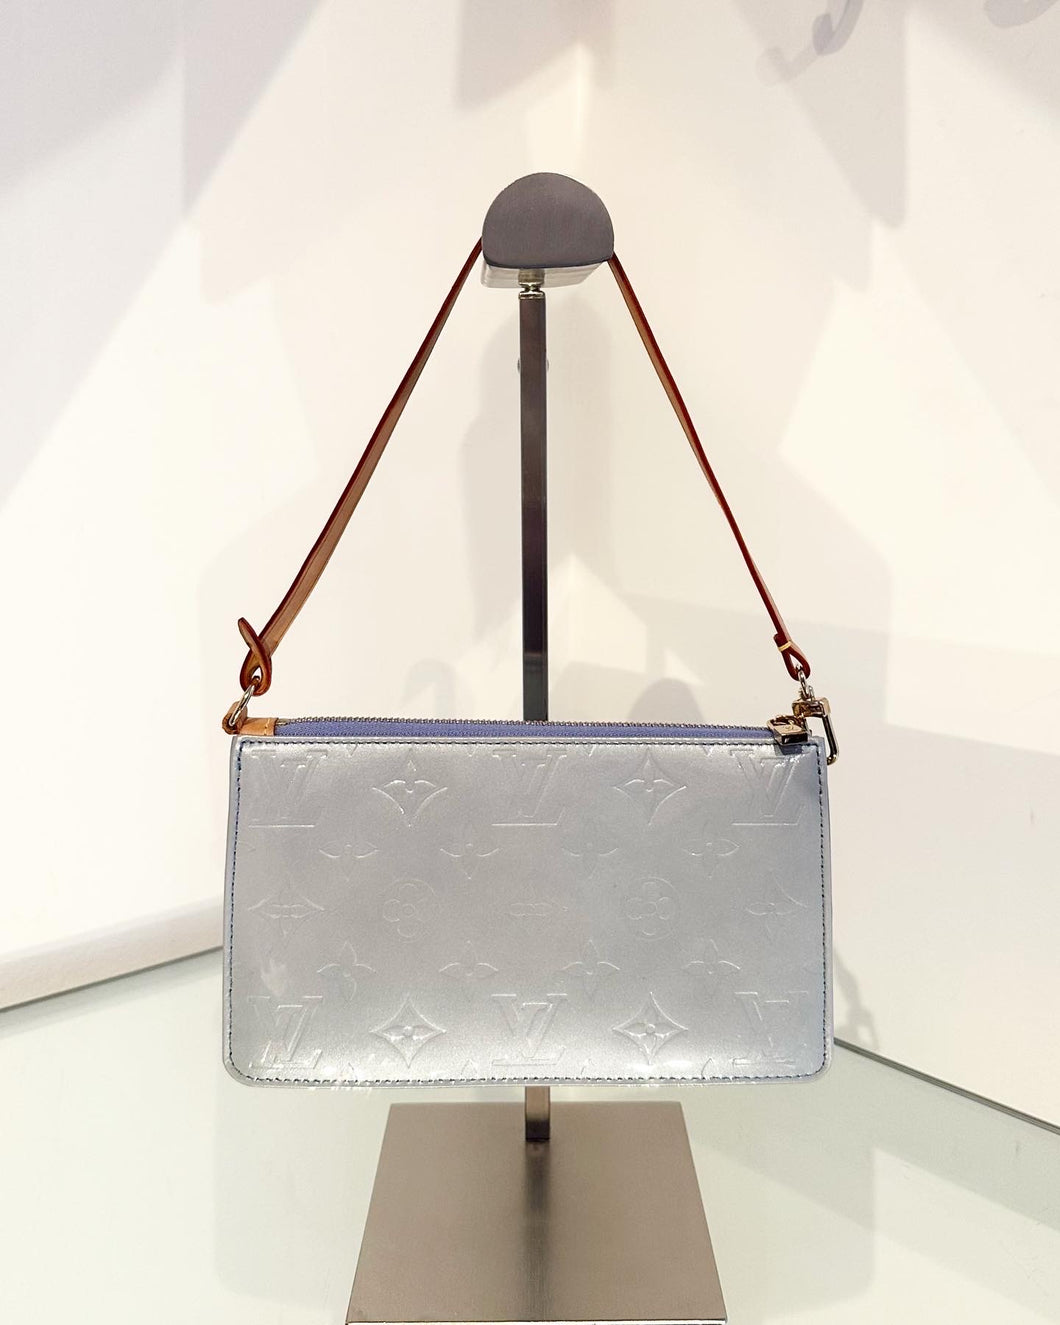 Authentic Louis Vuitton Vernis Lexington Pochette Handbag 